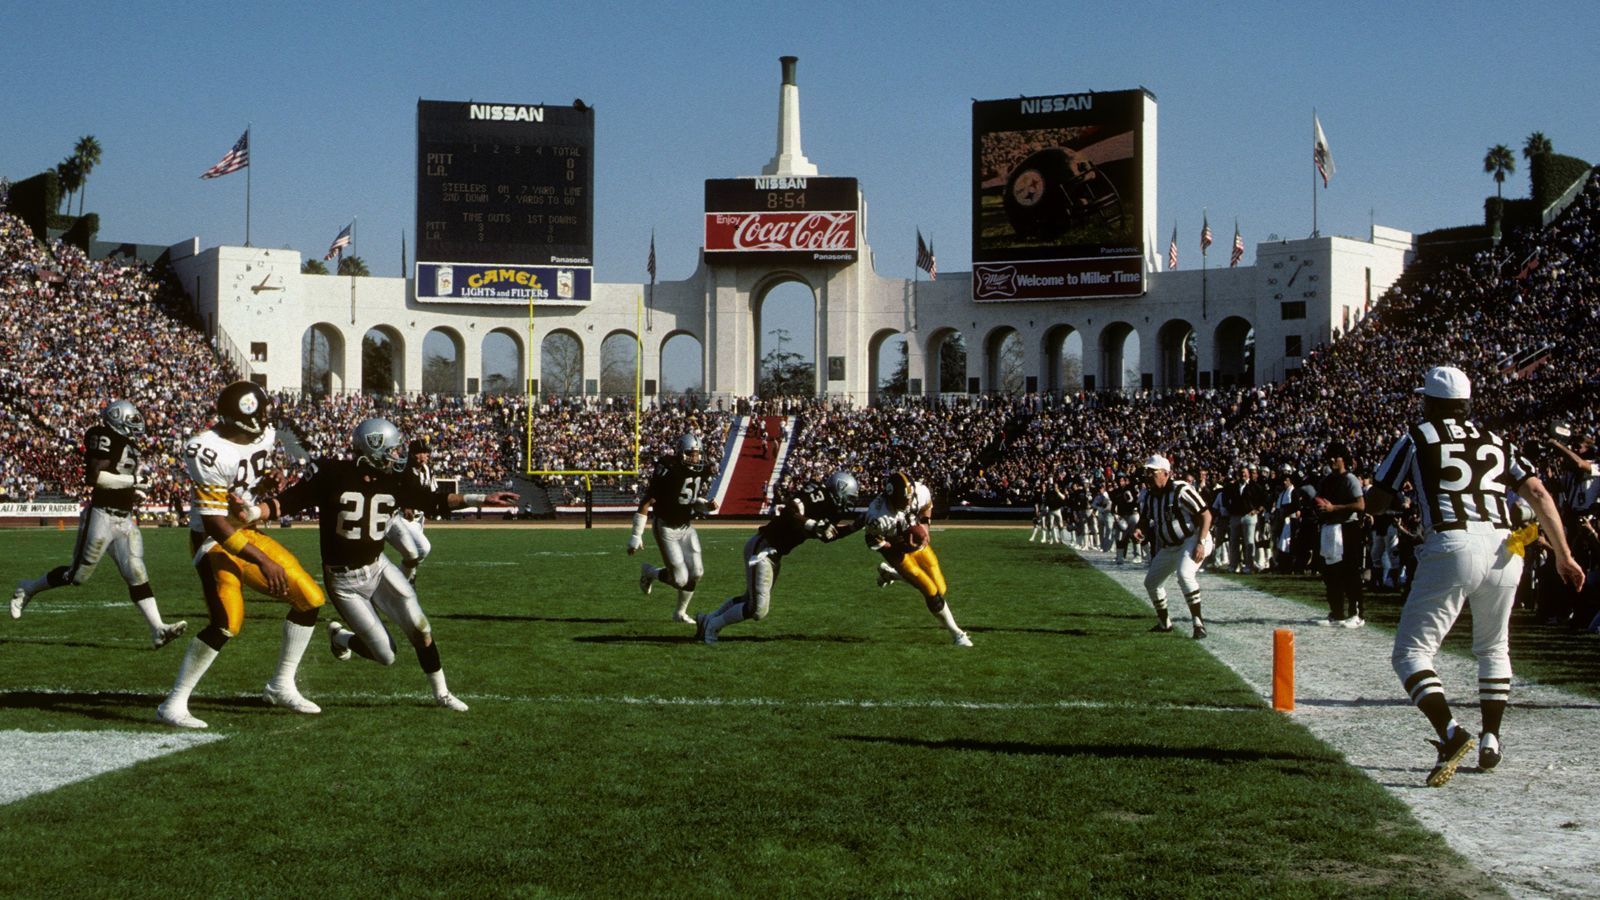 
                <strong>Pittsburgh Steelers gegen Las Vegas Raiders (13-17)</strong><br>
                Die Rivalität zwischen den Steelers und den Raiders begründet sich vor allem auf die 70er- und 80er-Jahre, angefangen mit dem Franco-Harris-Catch in der Divisional Round der Playoffs 1972, die den Steelers 30 Sekunden vor Ende der Partie den Sieg bescherte. In den Folgejahren kam es immer wieder im AFC Championship Game zum Duell der beiden Teams. Der Sieger gewann im Anschluss auch immer den Super Bowl. Dies waren in den Saisons 1974 und 1975 die Steelers, 1976 die Raiders. Am 1. Januar 1984 war in der Divisional Round Pittsburgh die Hürde für die Raiders auf dem Weg zum Super-Bowl-Triumph. Insgesamt steht es in sechs Playoff-Duellen 3-3. Auch der Umzug der Raiders nach Las Vegas dürfte der Rivalität keinen Abbruch tun. Denn die lebte auch während der zwischenzeitlichen Station in Los Angeles weiter.
              